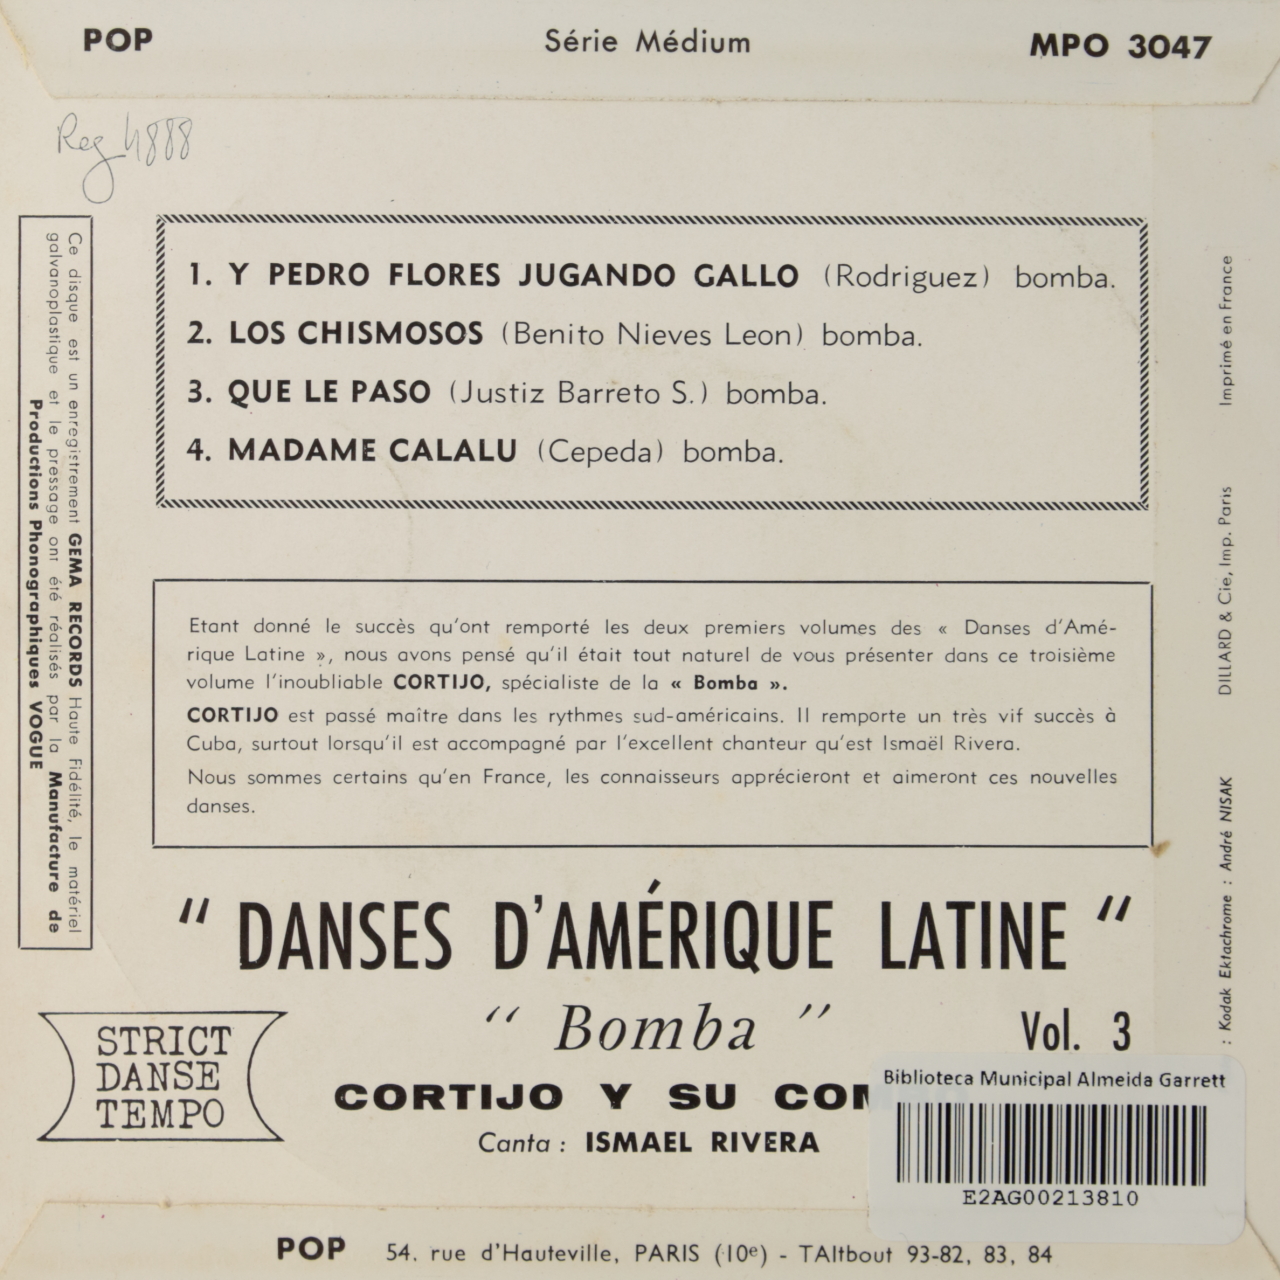 Danses dAmérique Latine Vol. 3: Bomba